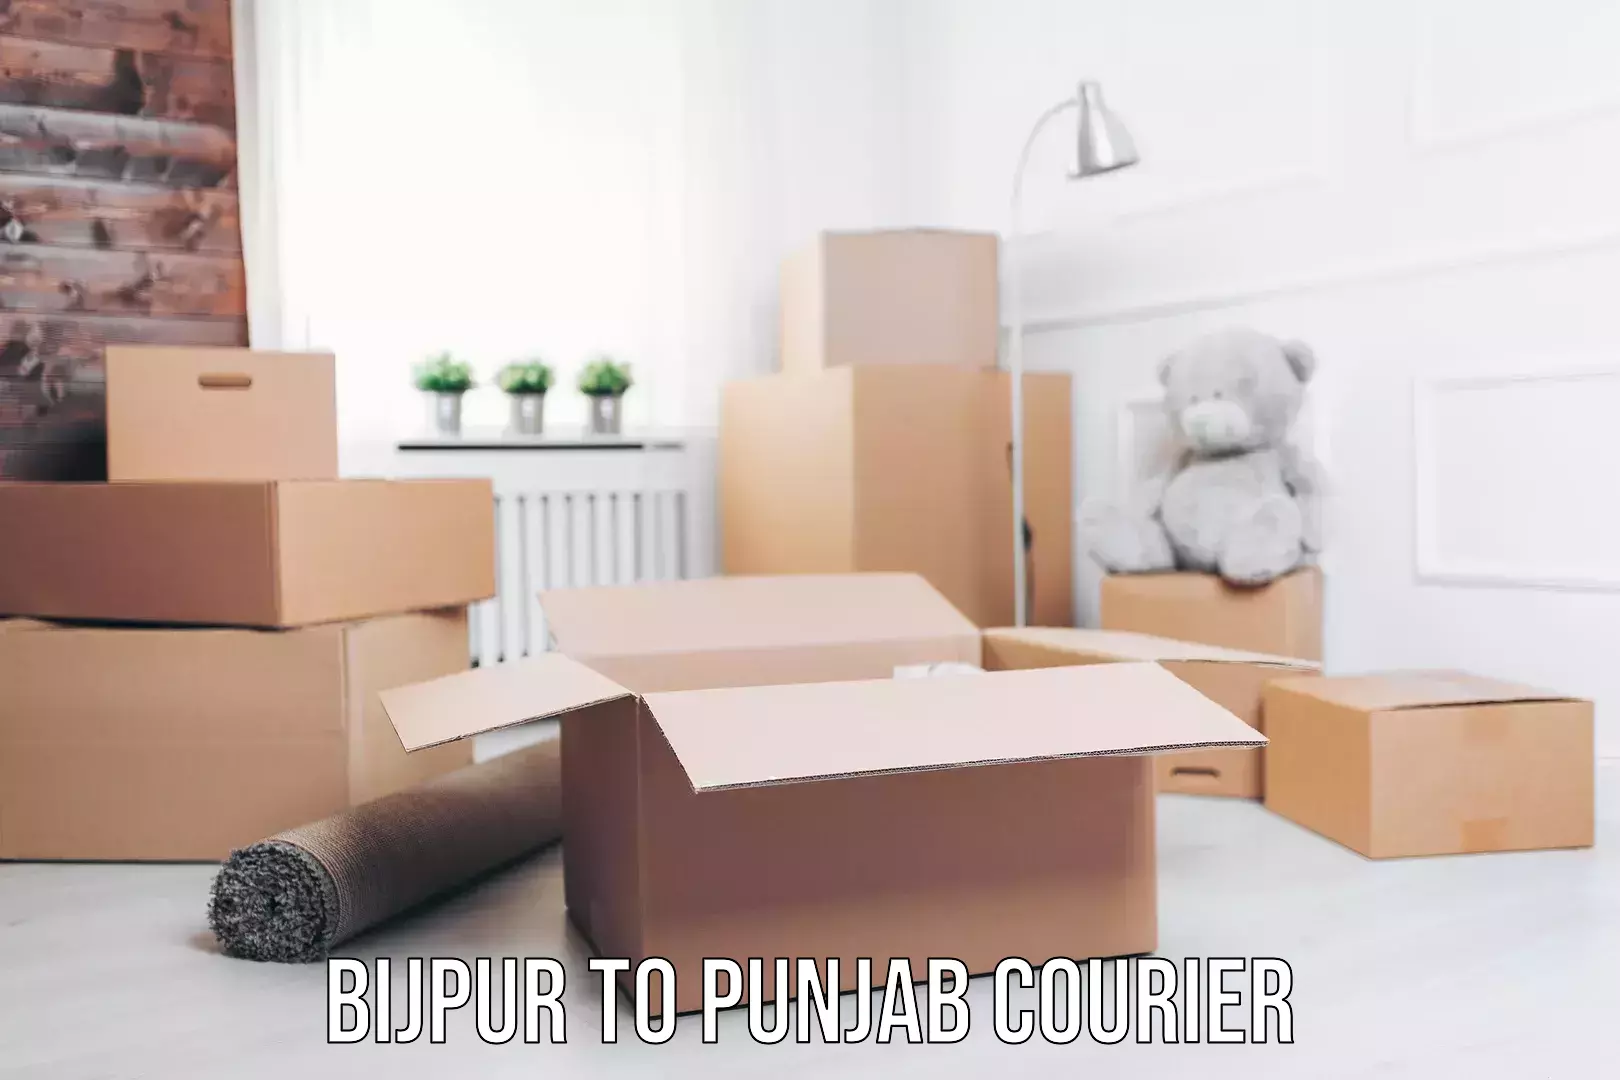 Doorstep delivery service Bijpur to Punjab